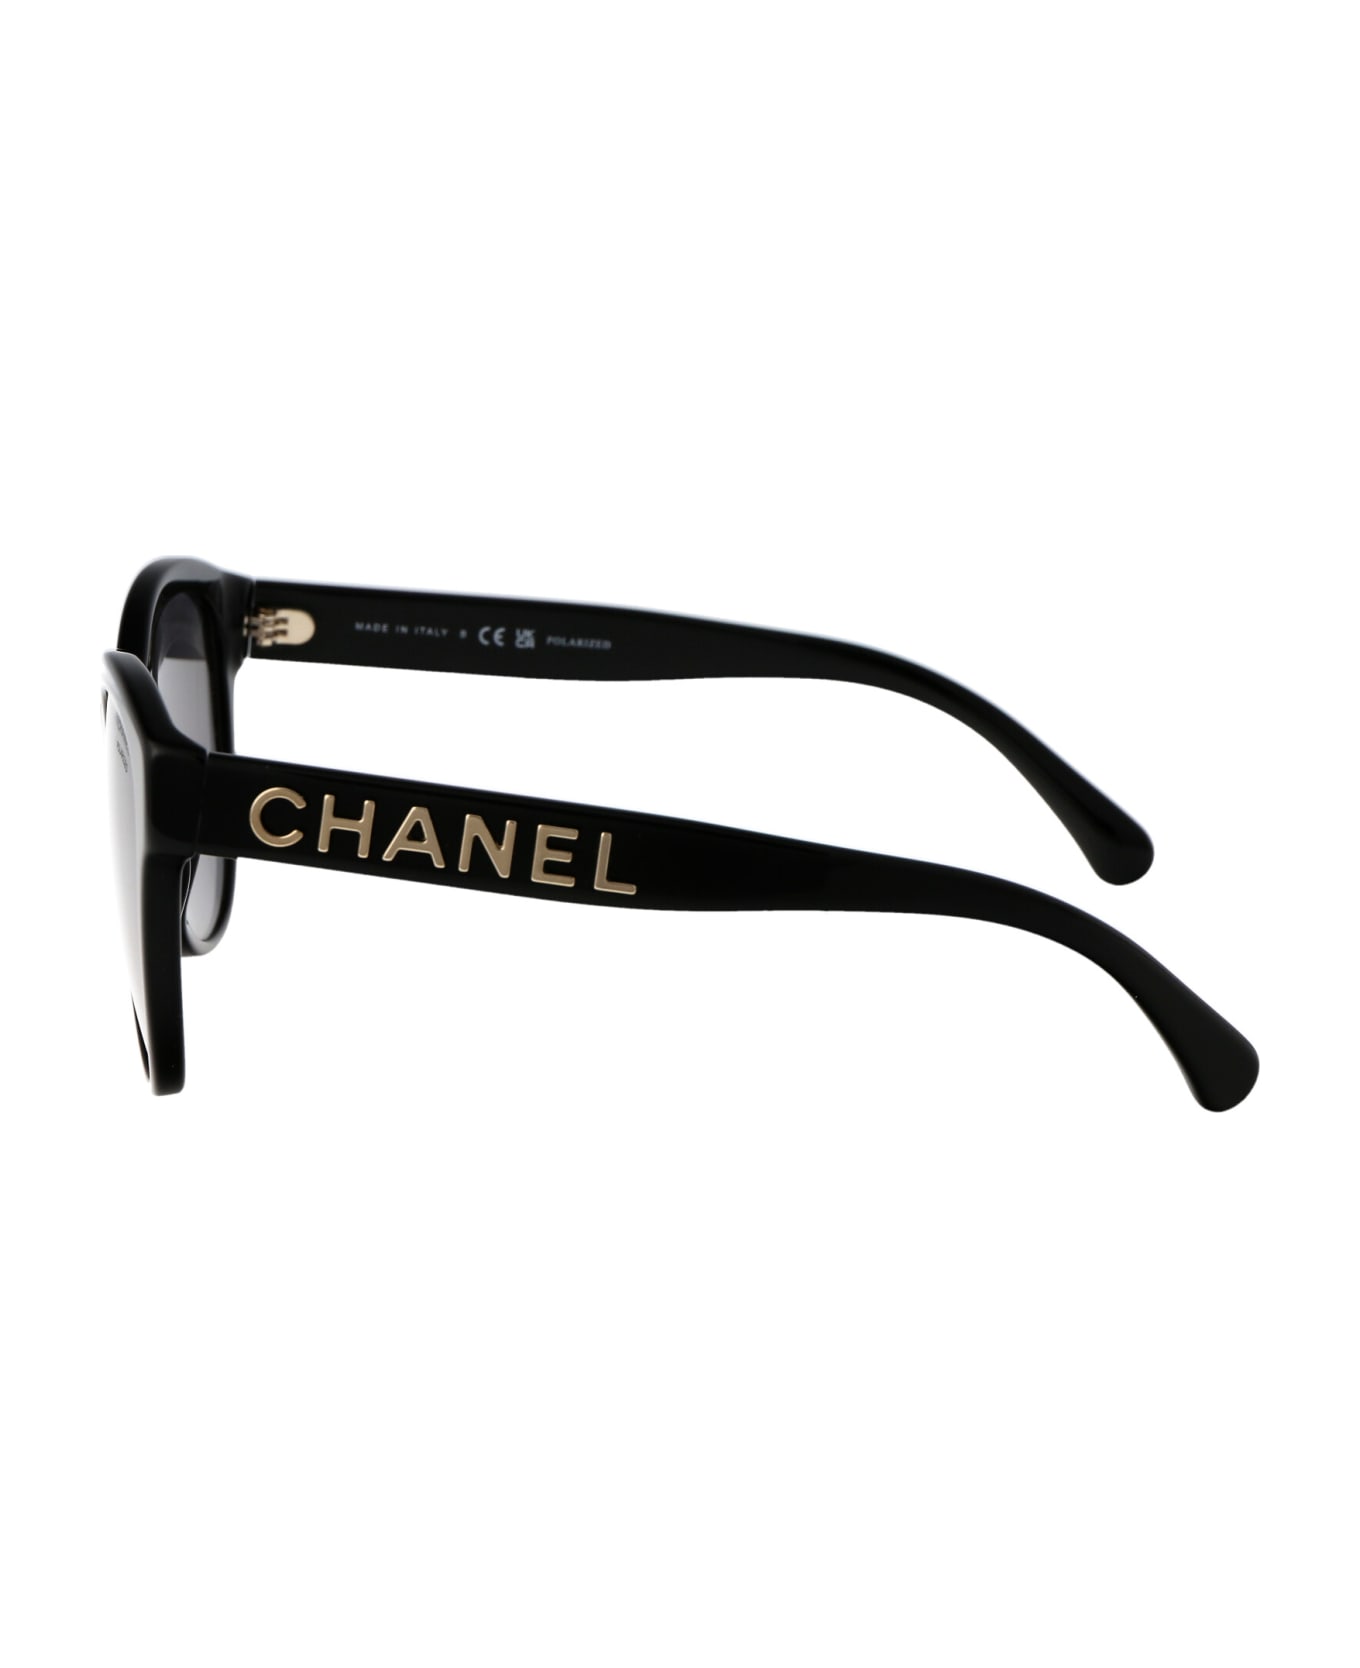 Chanel 0ch5458 Sunglasses - C622T8 BLACK